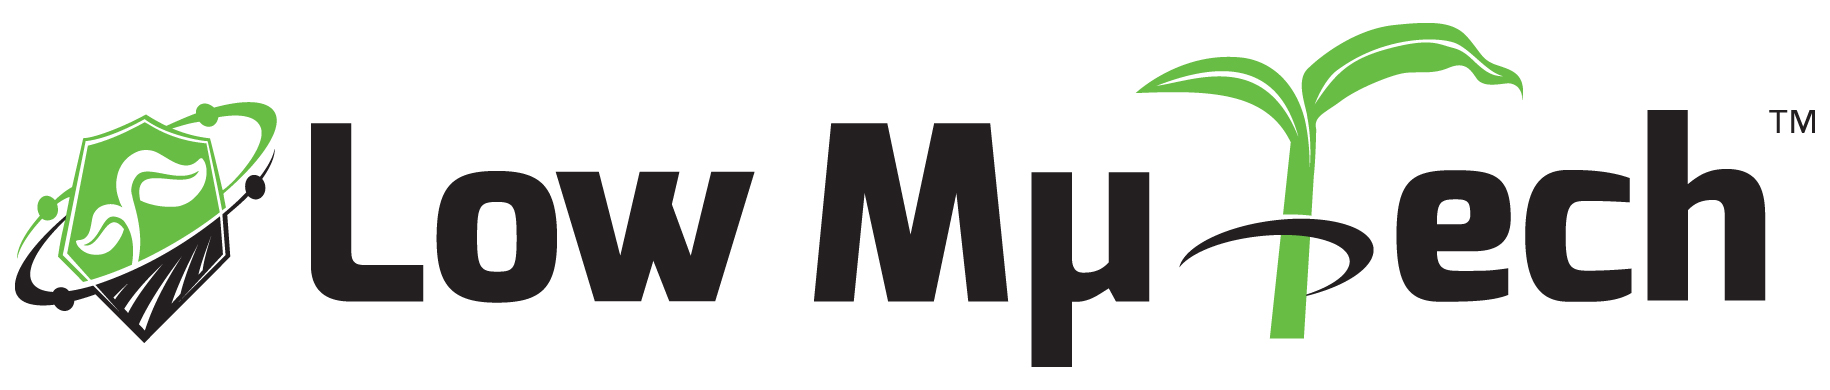 Low-Mu-Tech-Logo_grn_blk.jpg